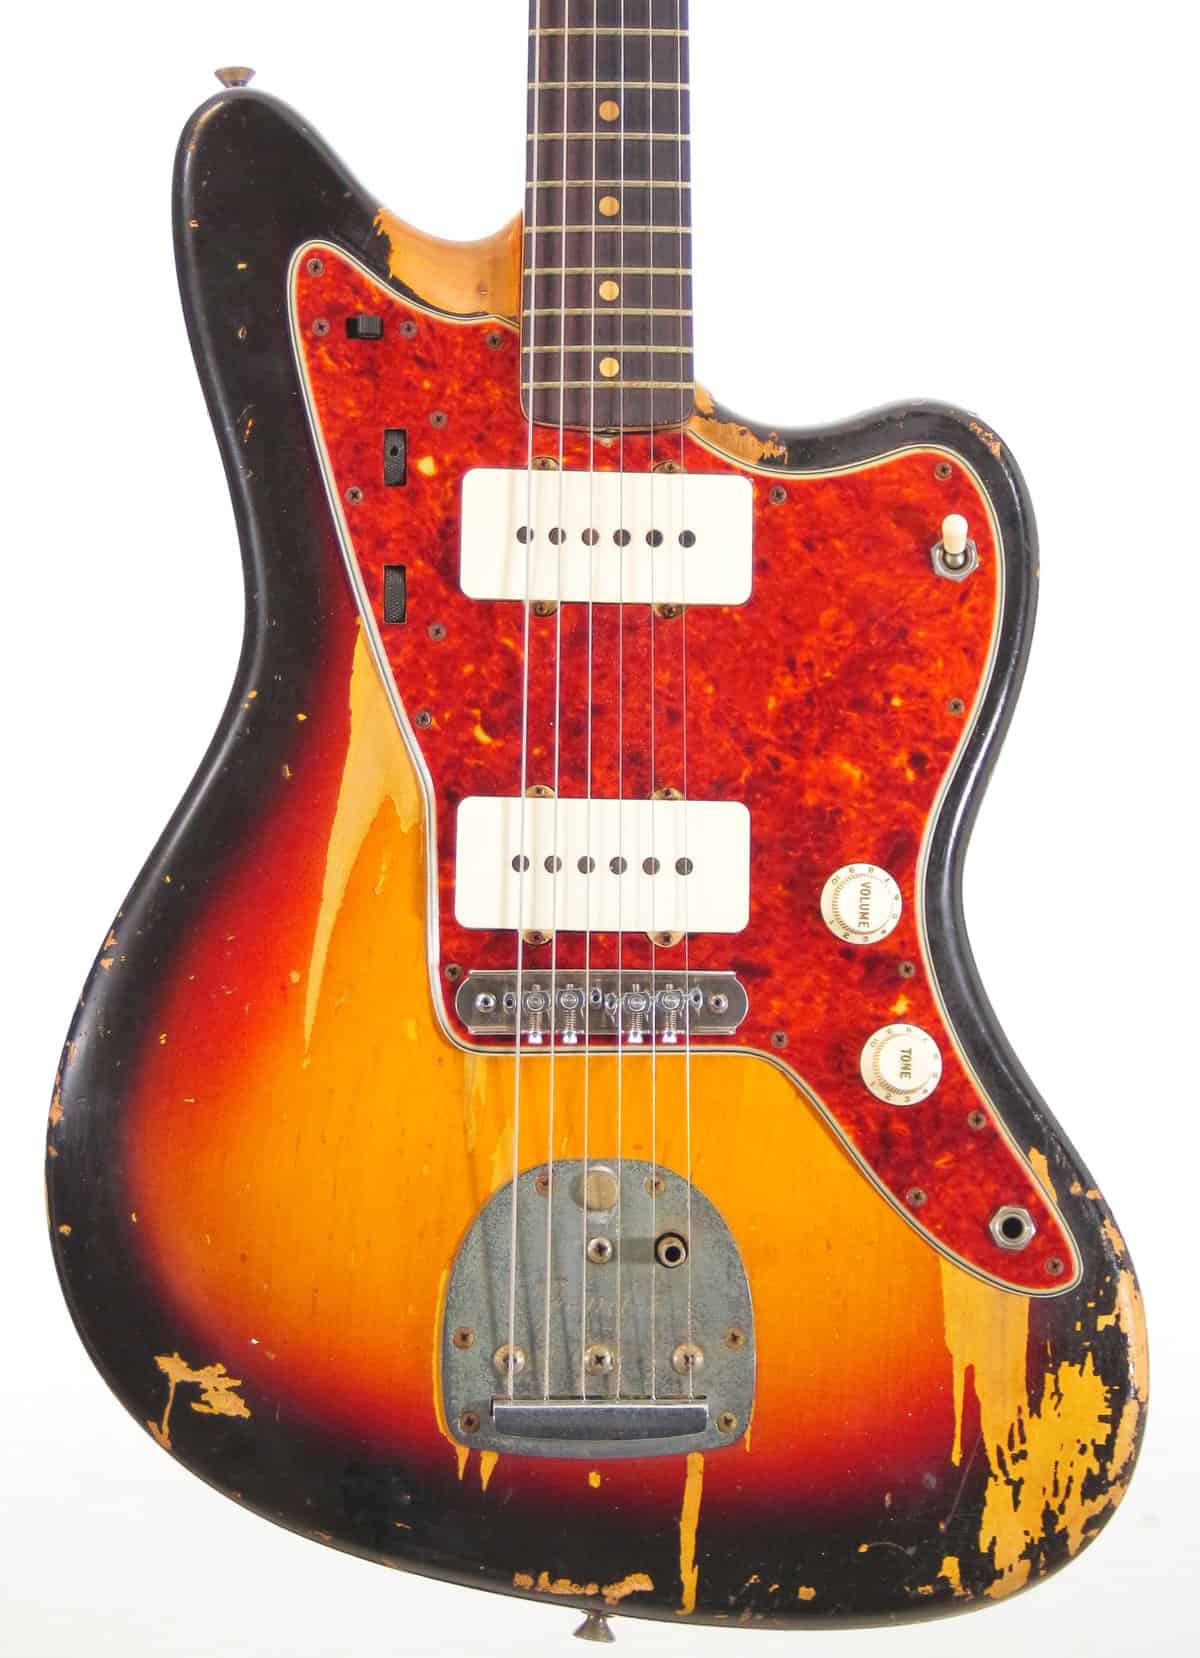 IMG 0413 4 - Fender Jazzmaster 1963